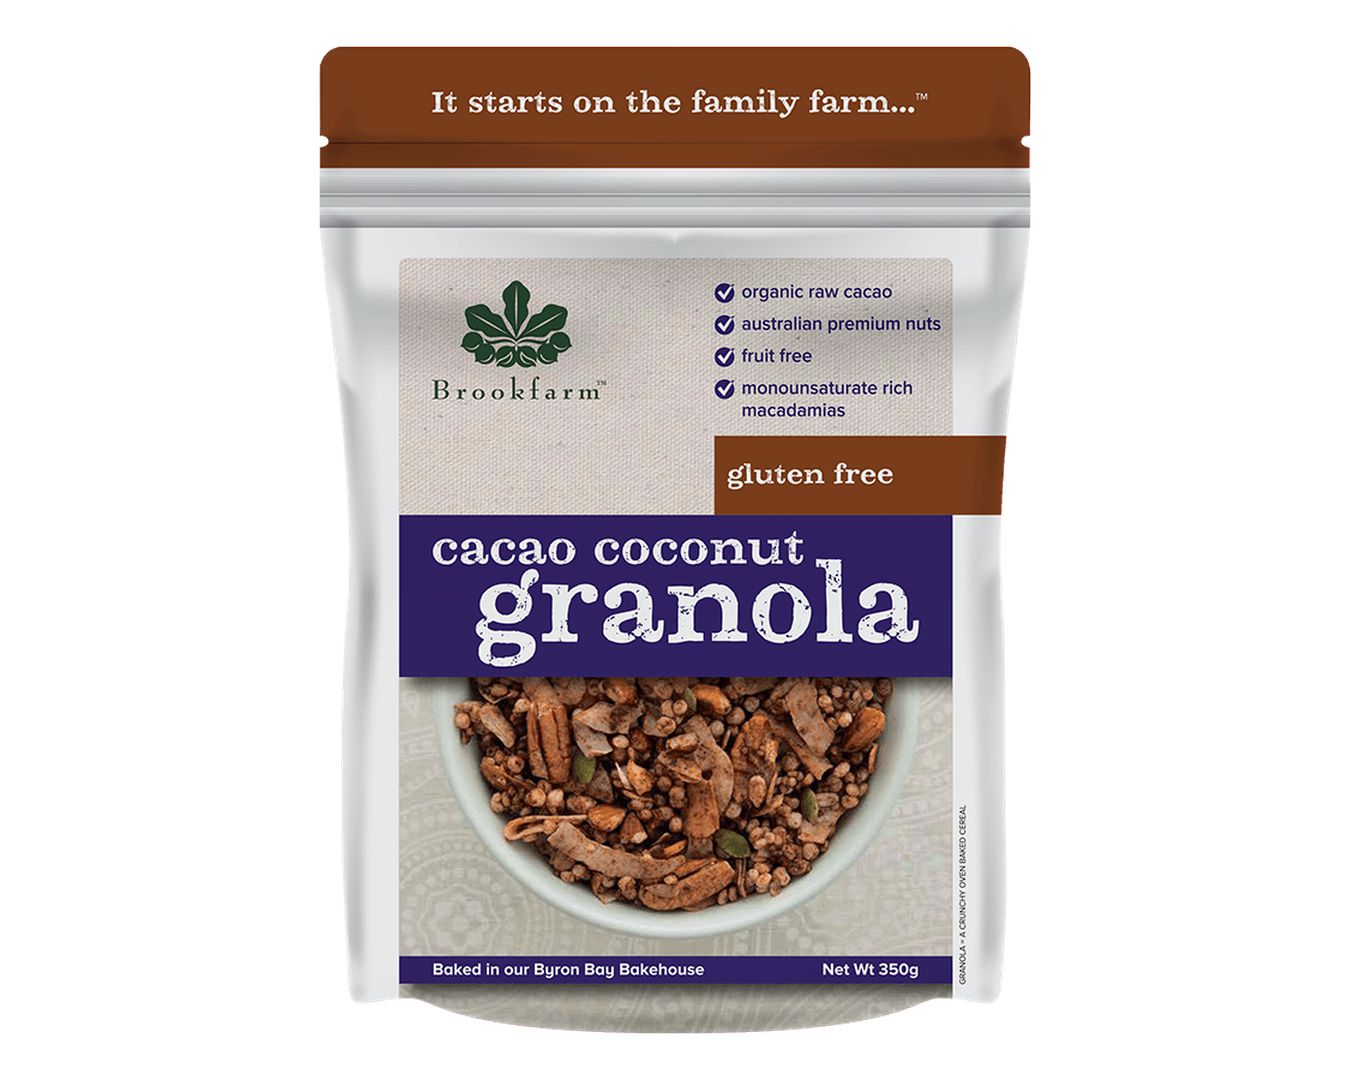 Brookfarm Cacao Coco Granola 350g-Cereal-The Local Basket